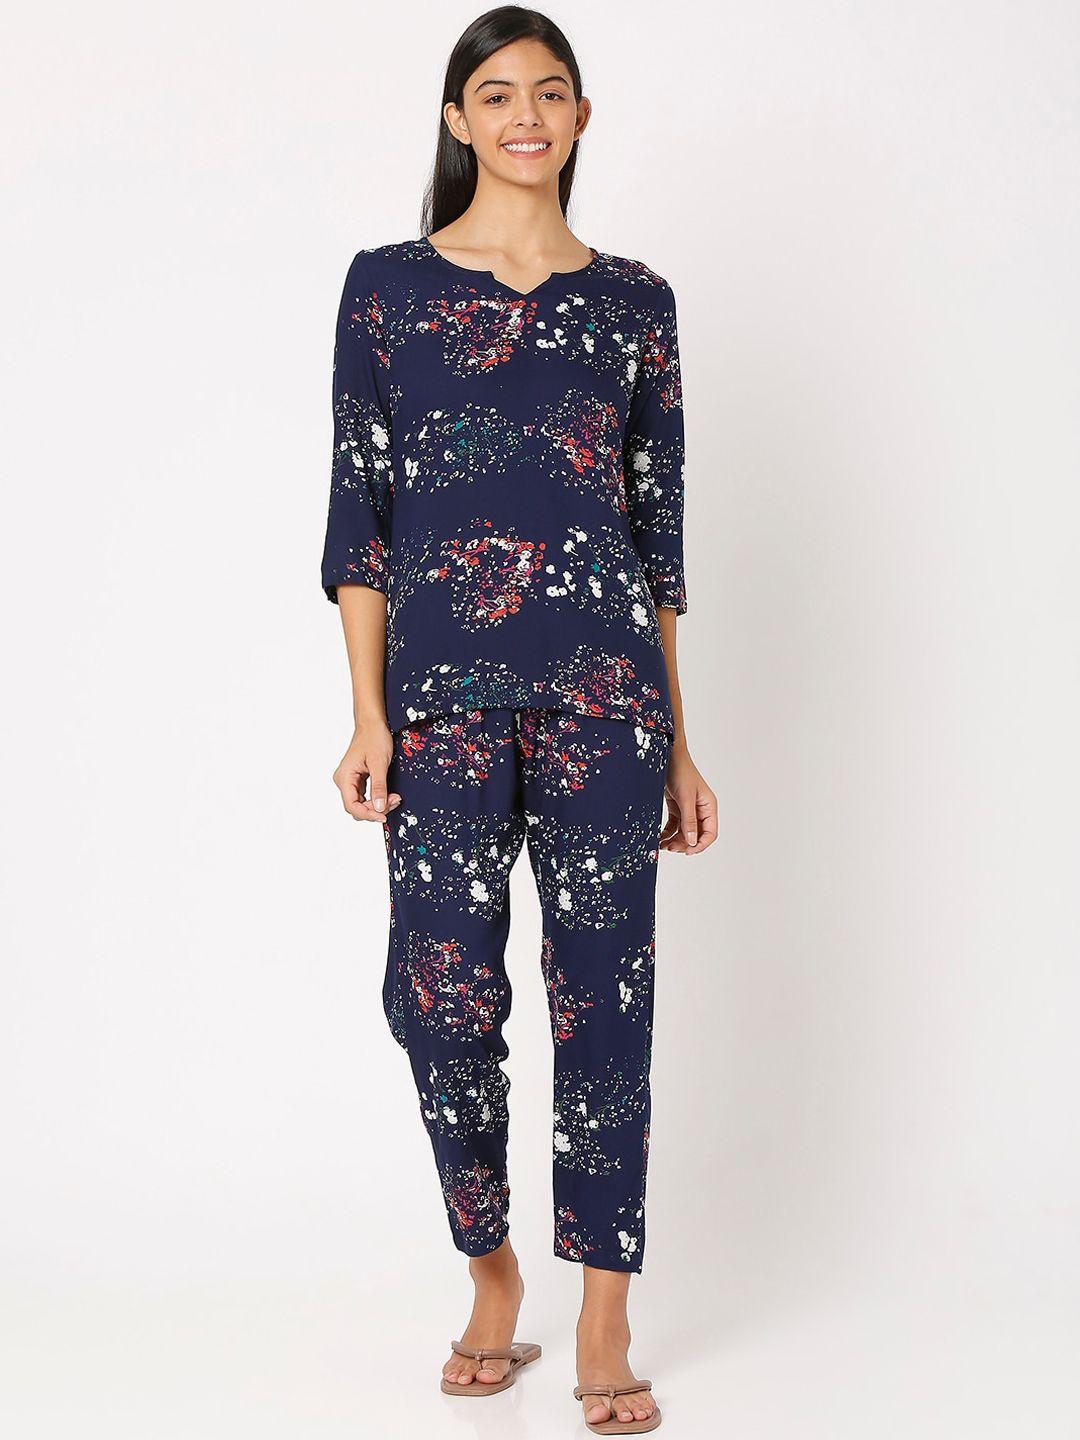 smarty-pants-women-blue-floral-print-night-suit